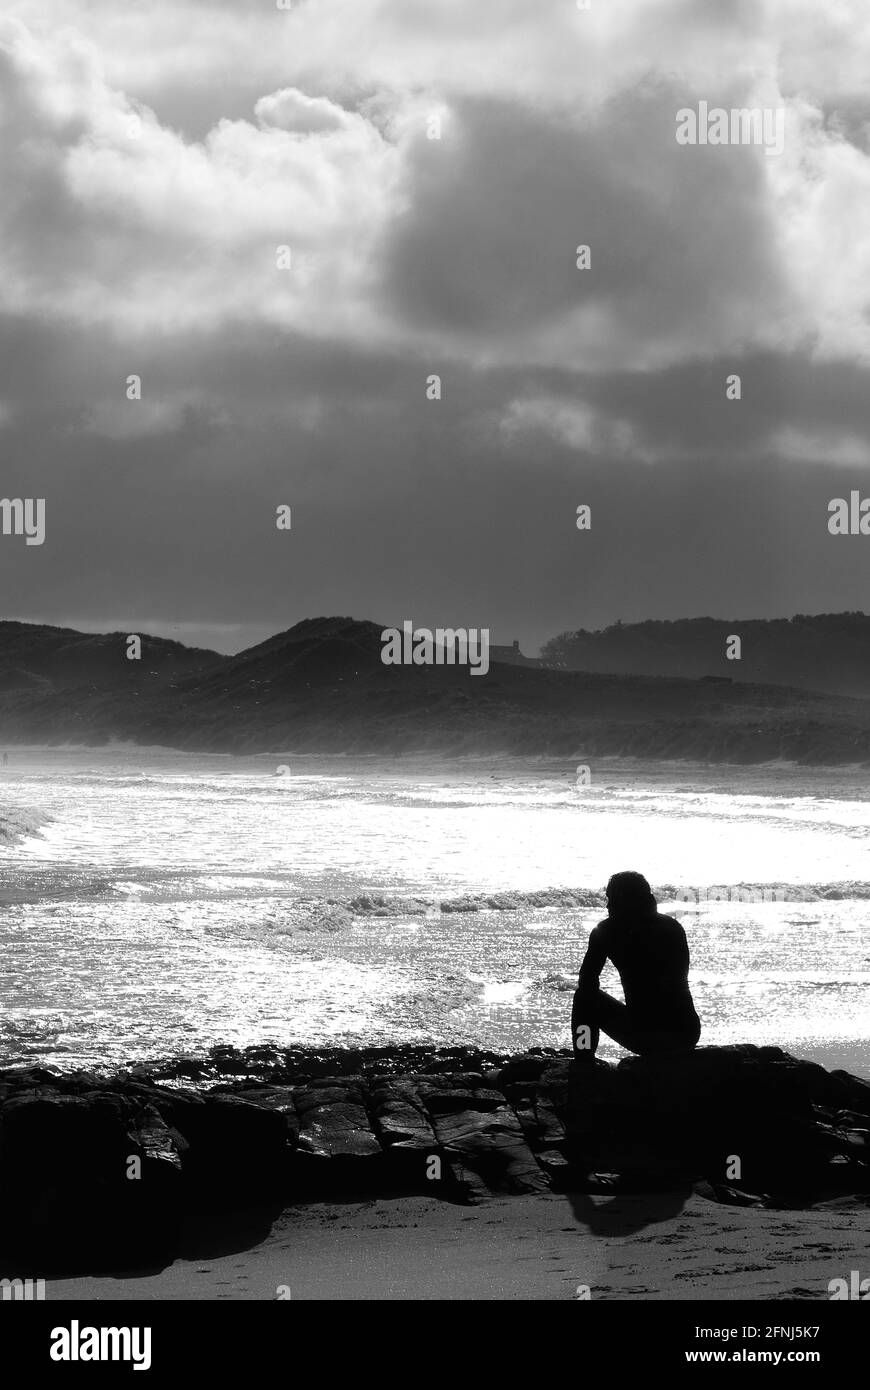 Un'immagine monocromatica in formato verticale di una singola figura in silhouette seduta su rocce in un ambiente costiero con sfondo di dune e nuvole in deriva Foto Stock